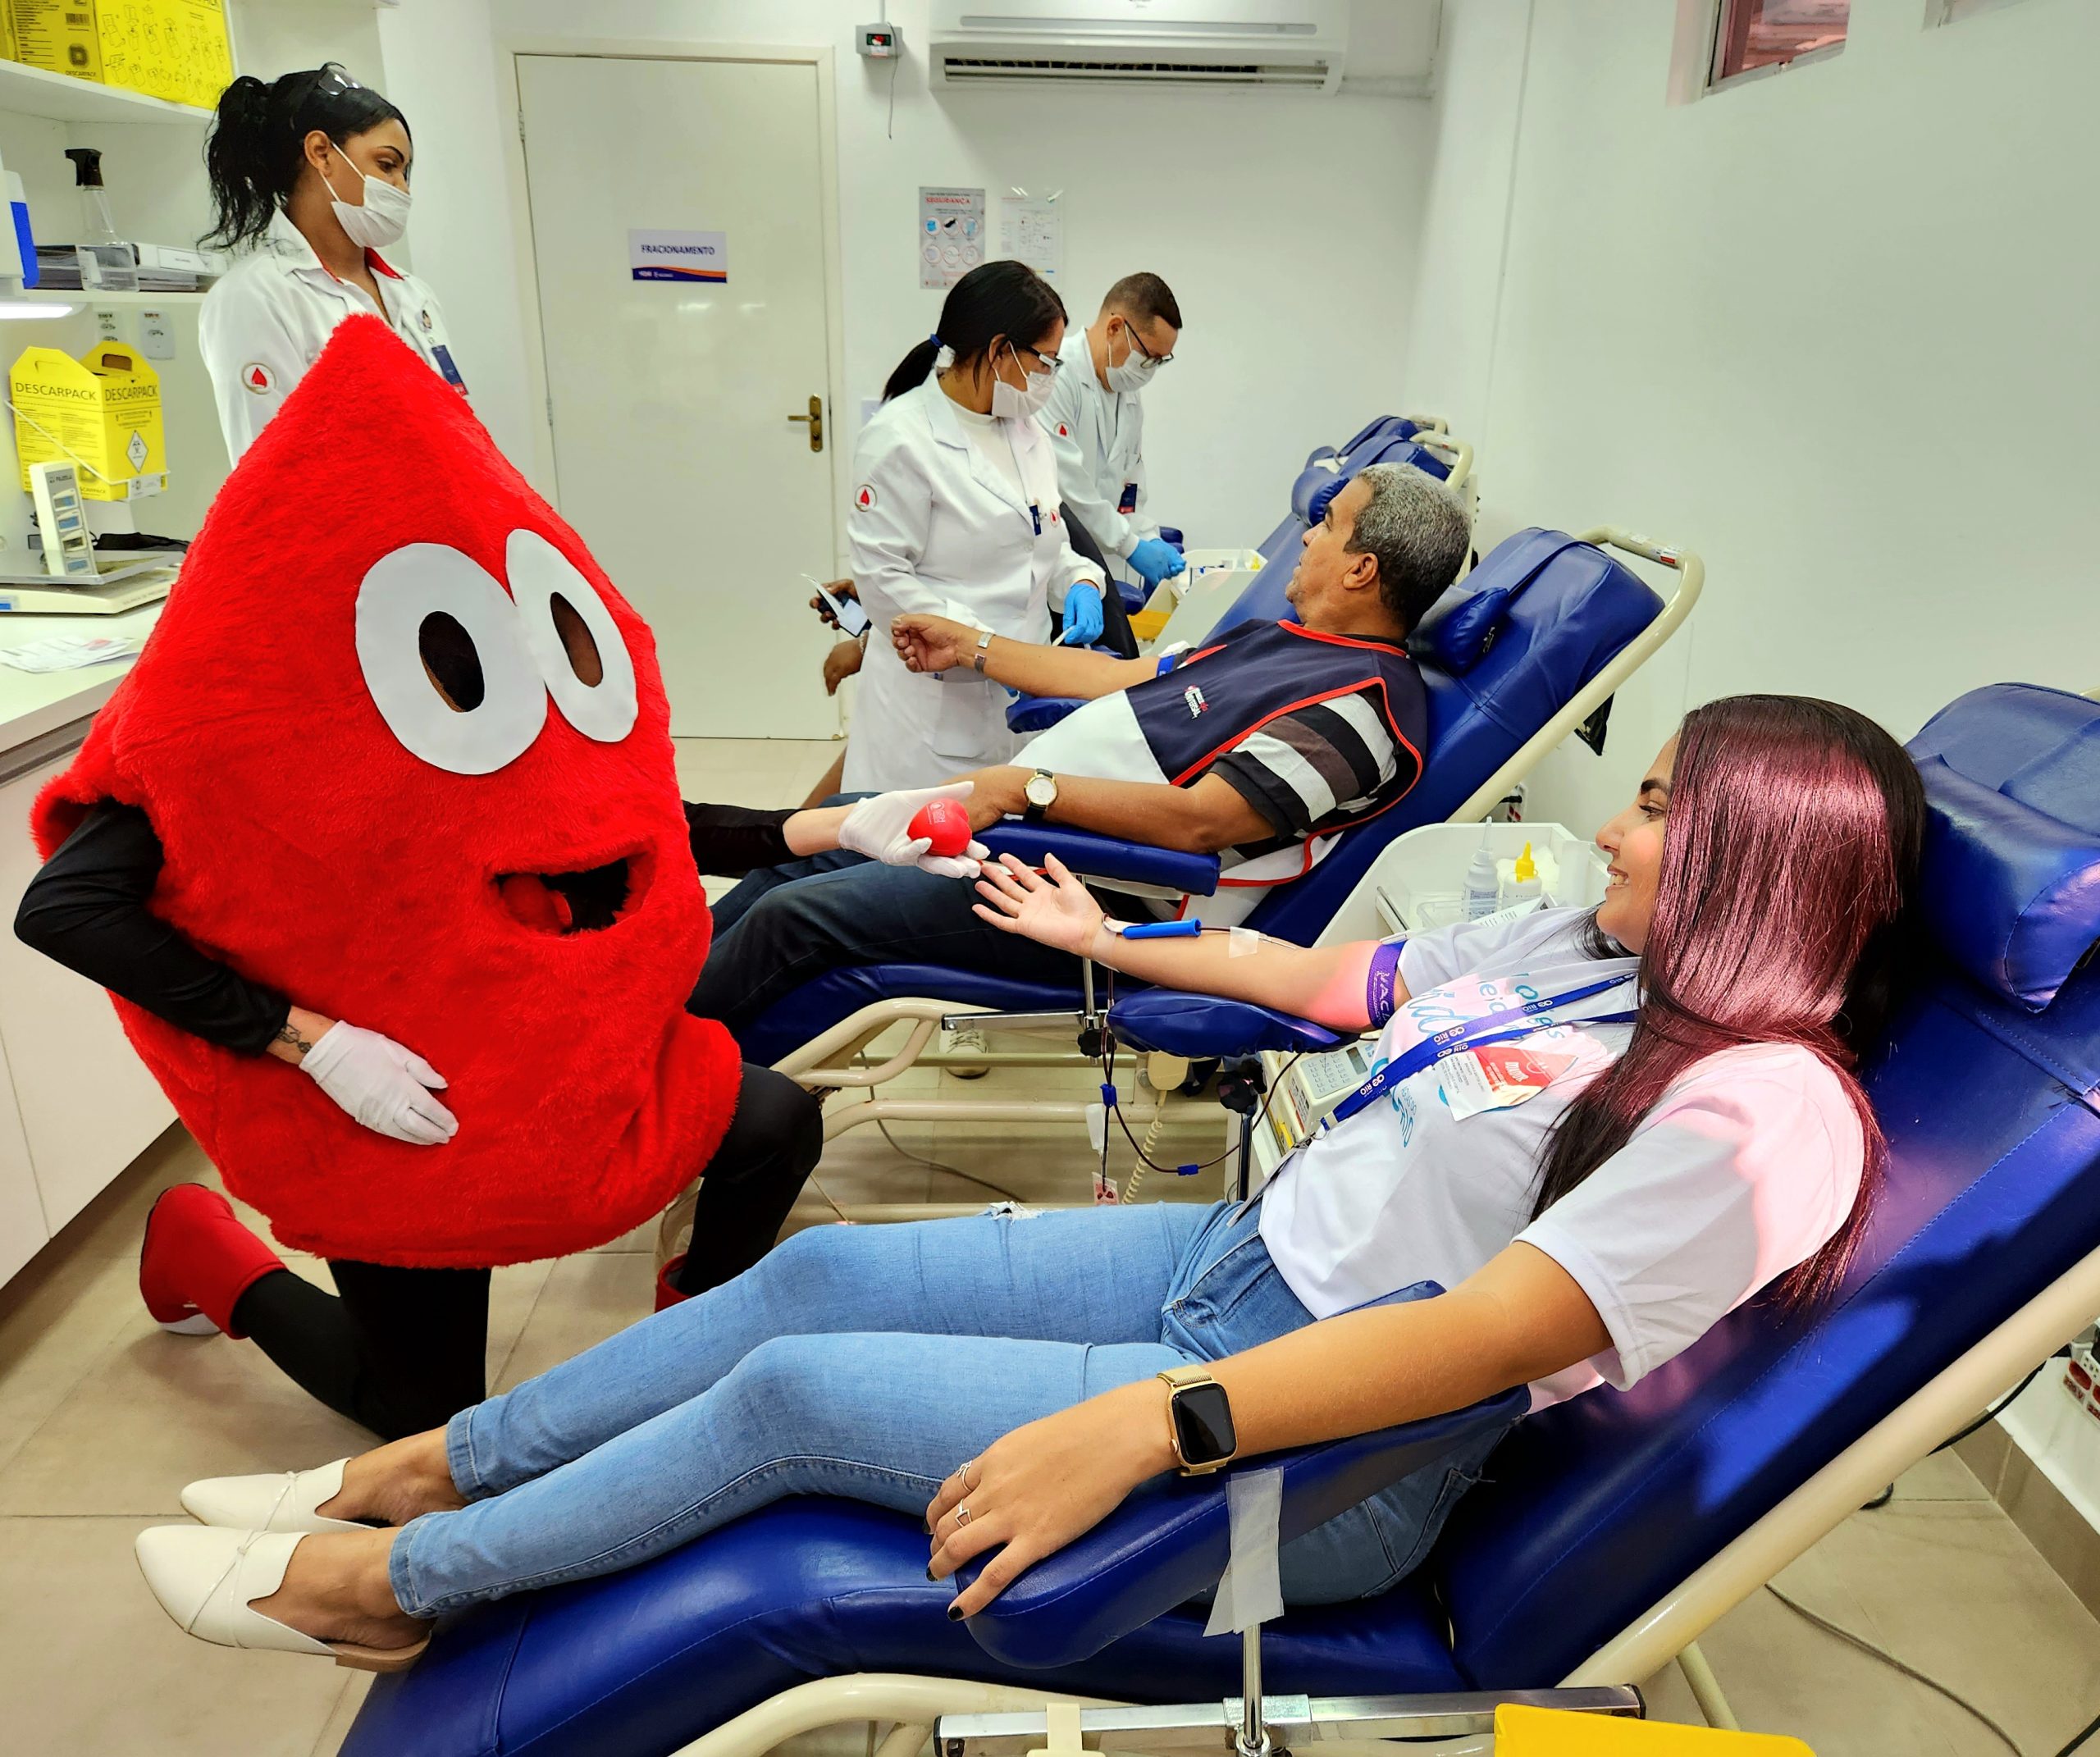 Solidariedade: Águas do Rio realiza campanha de doação de sangue para o Hospital Geral de Nova Iguaçu